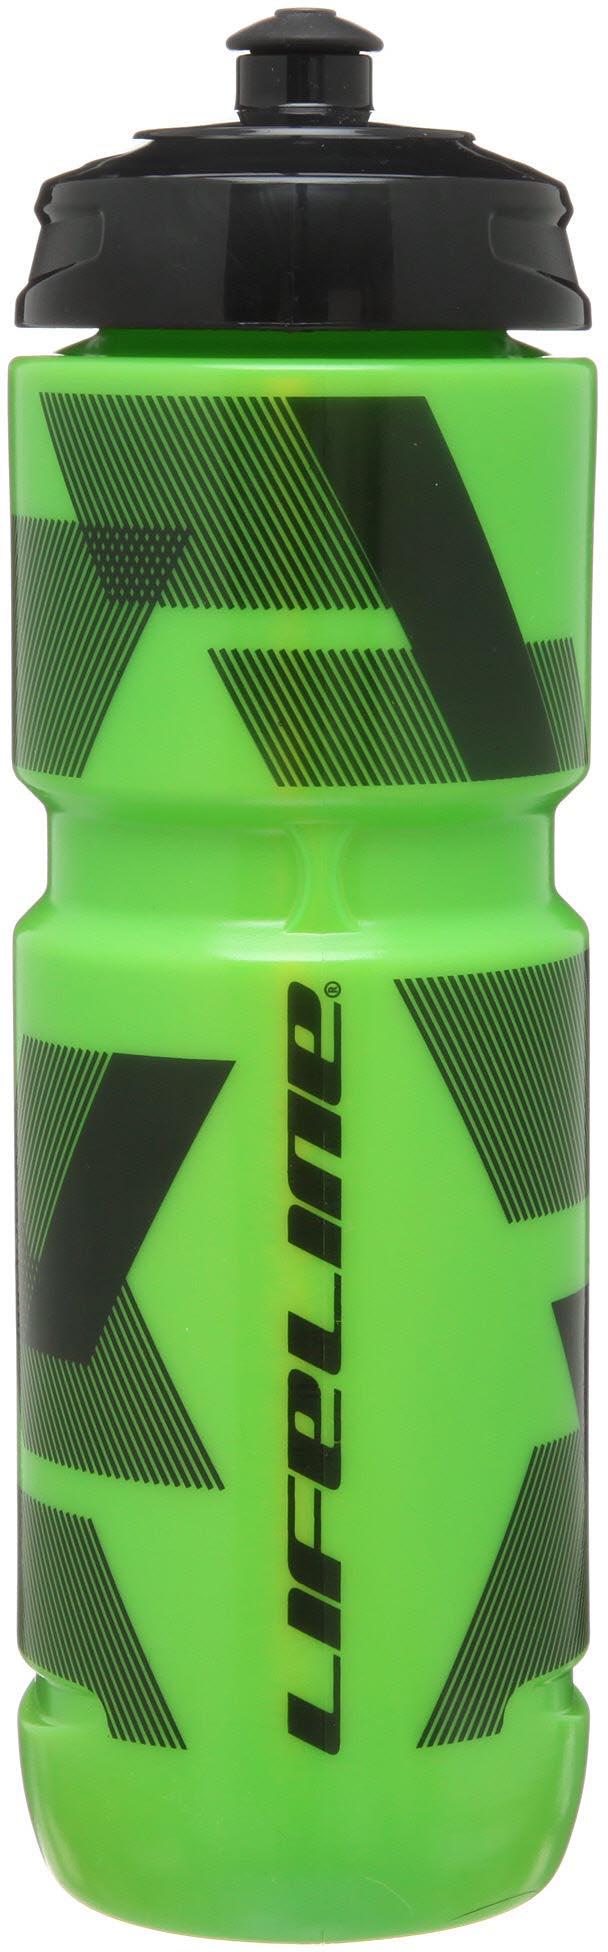 Lifeline Water Bottle 800ml  Green/black